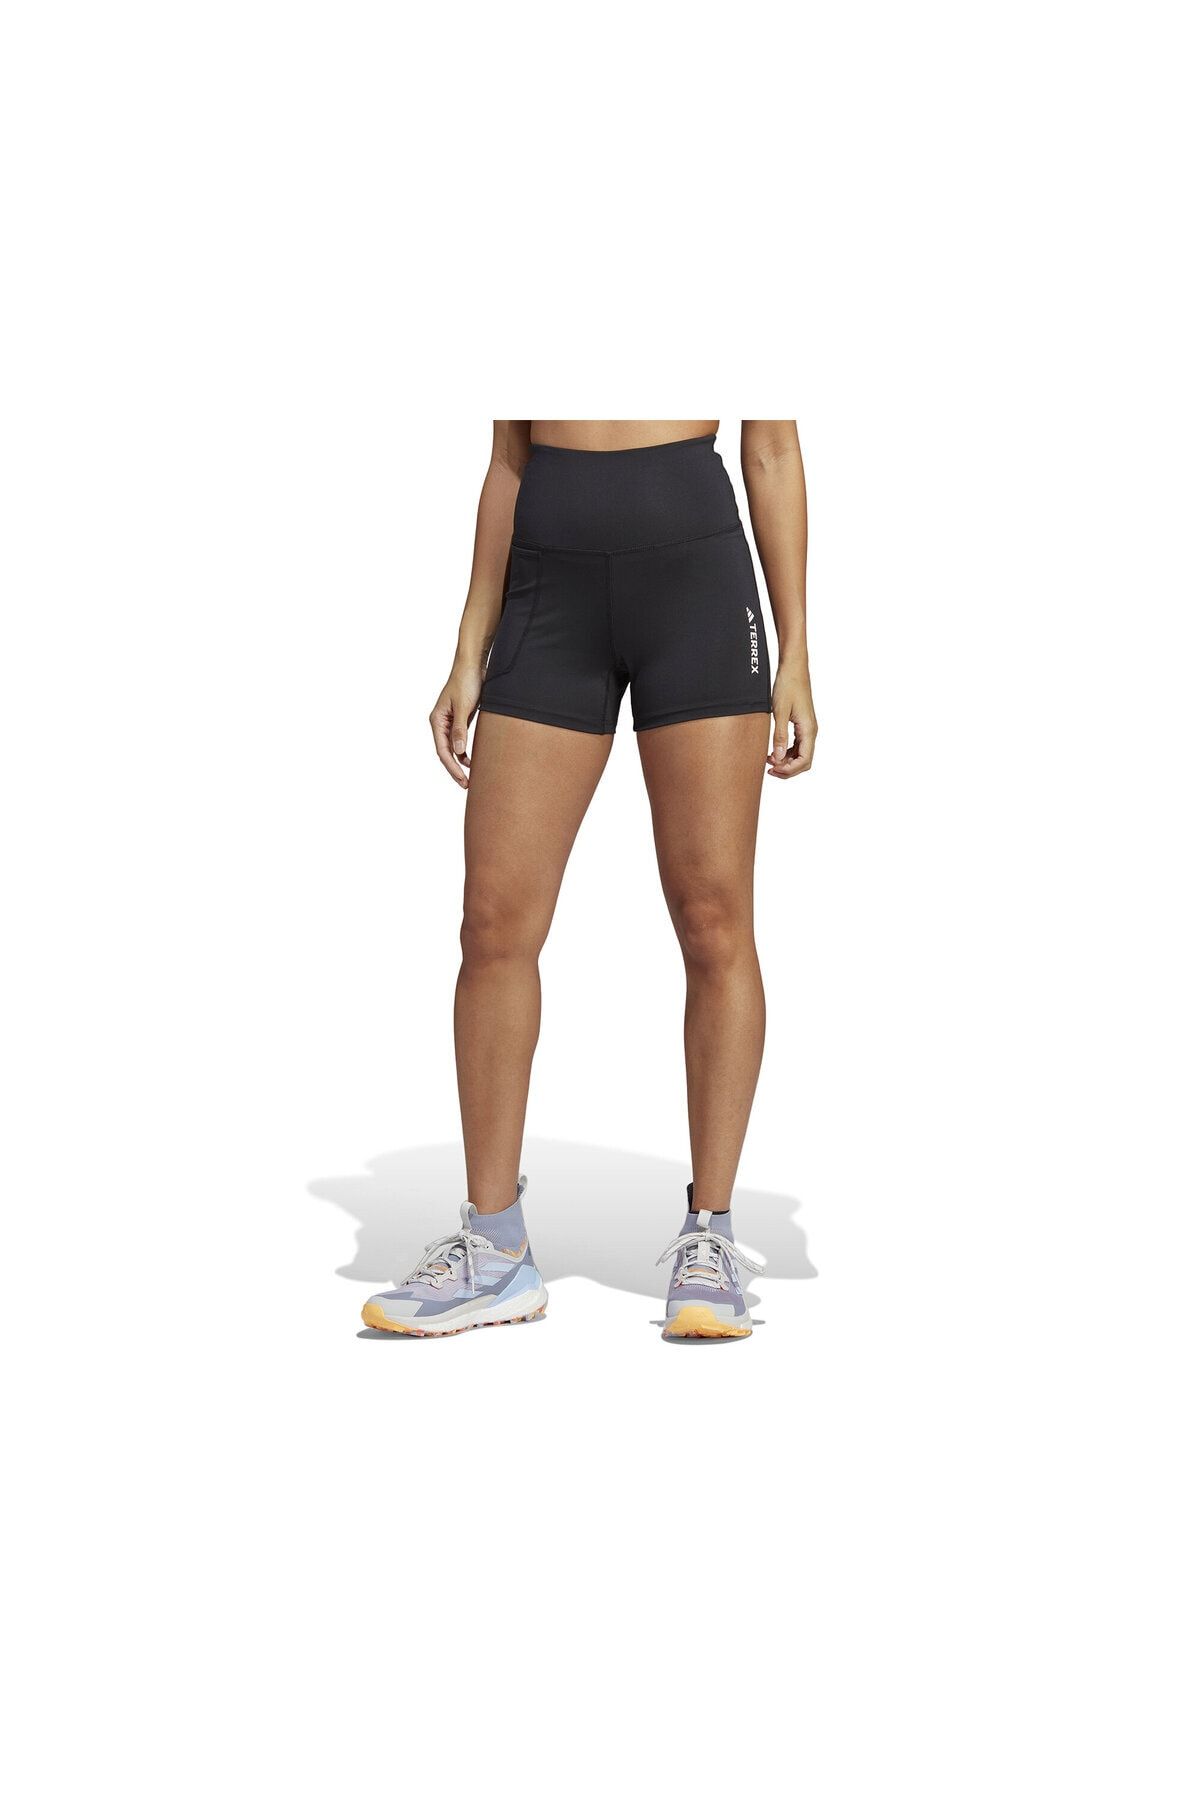 adidas W Mt Shorts Kadın Koşu Şortu HZ1378 Siyah